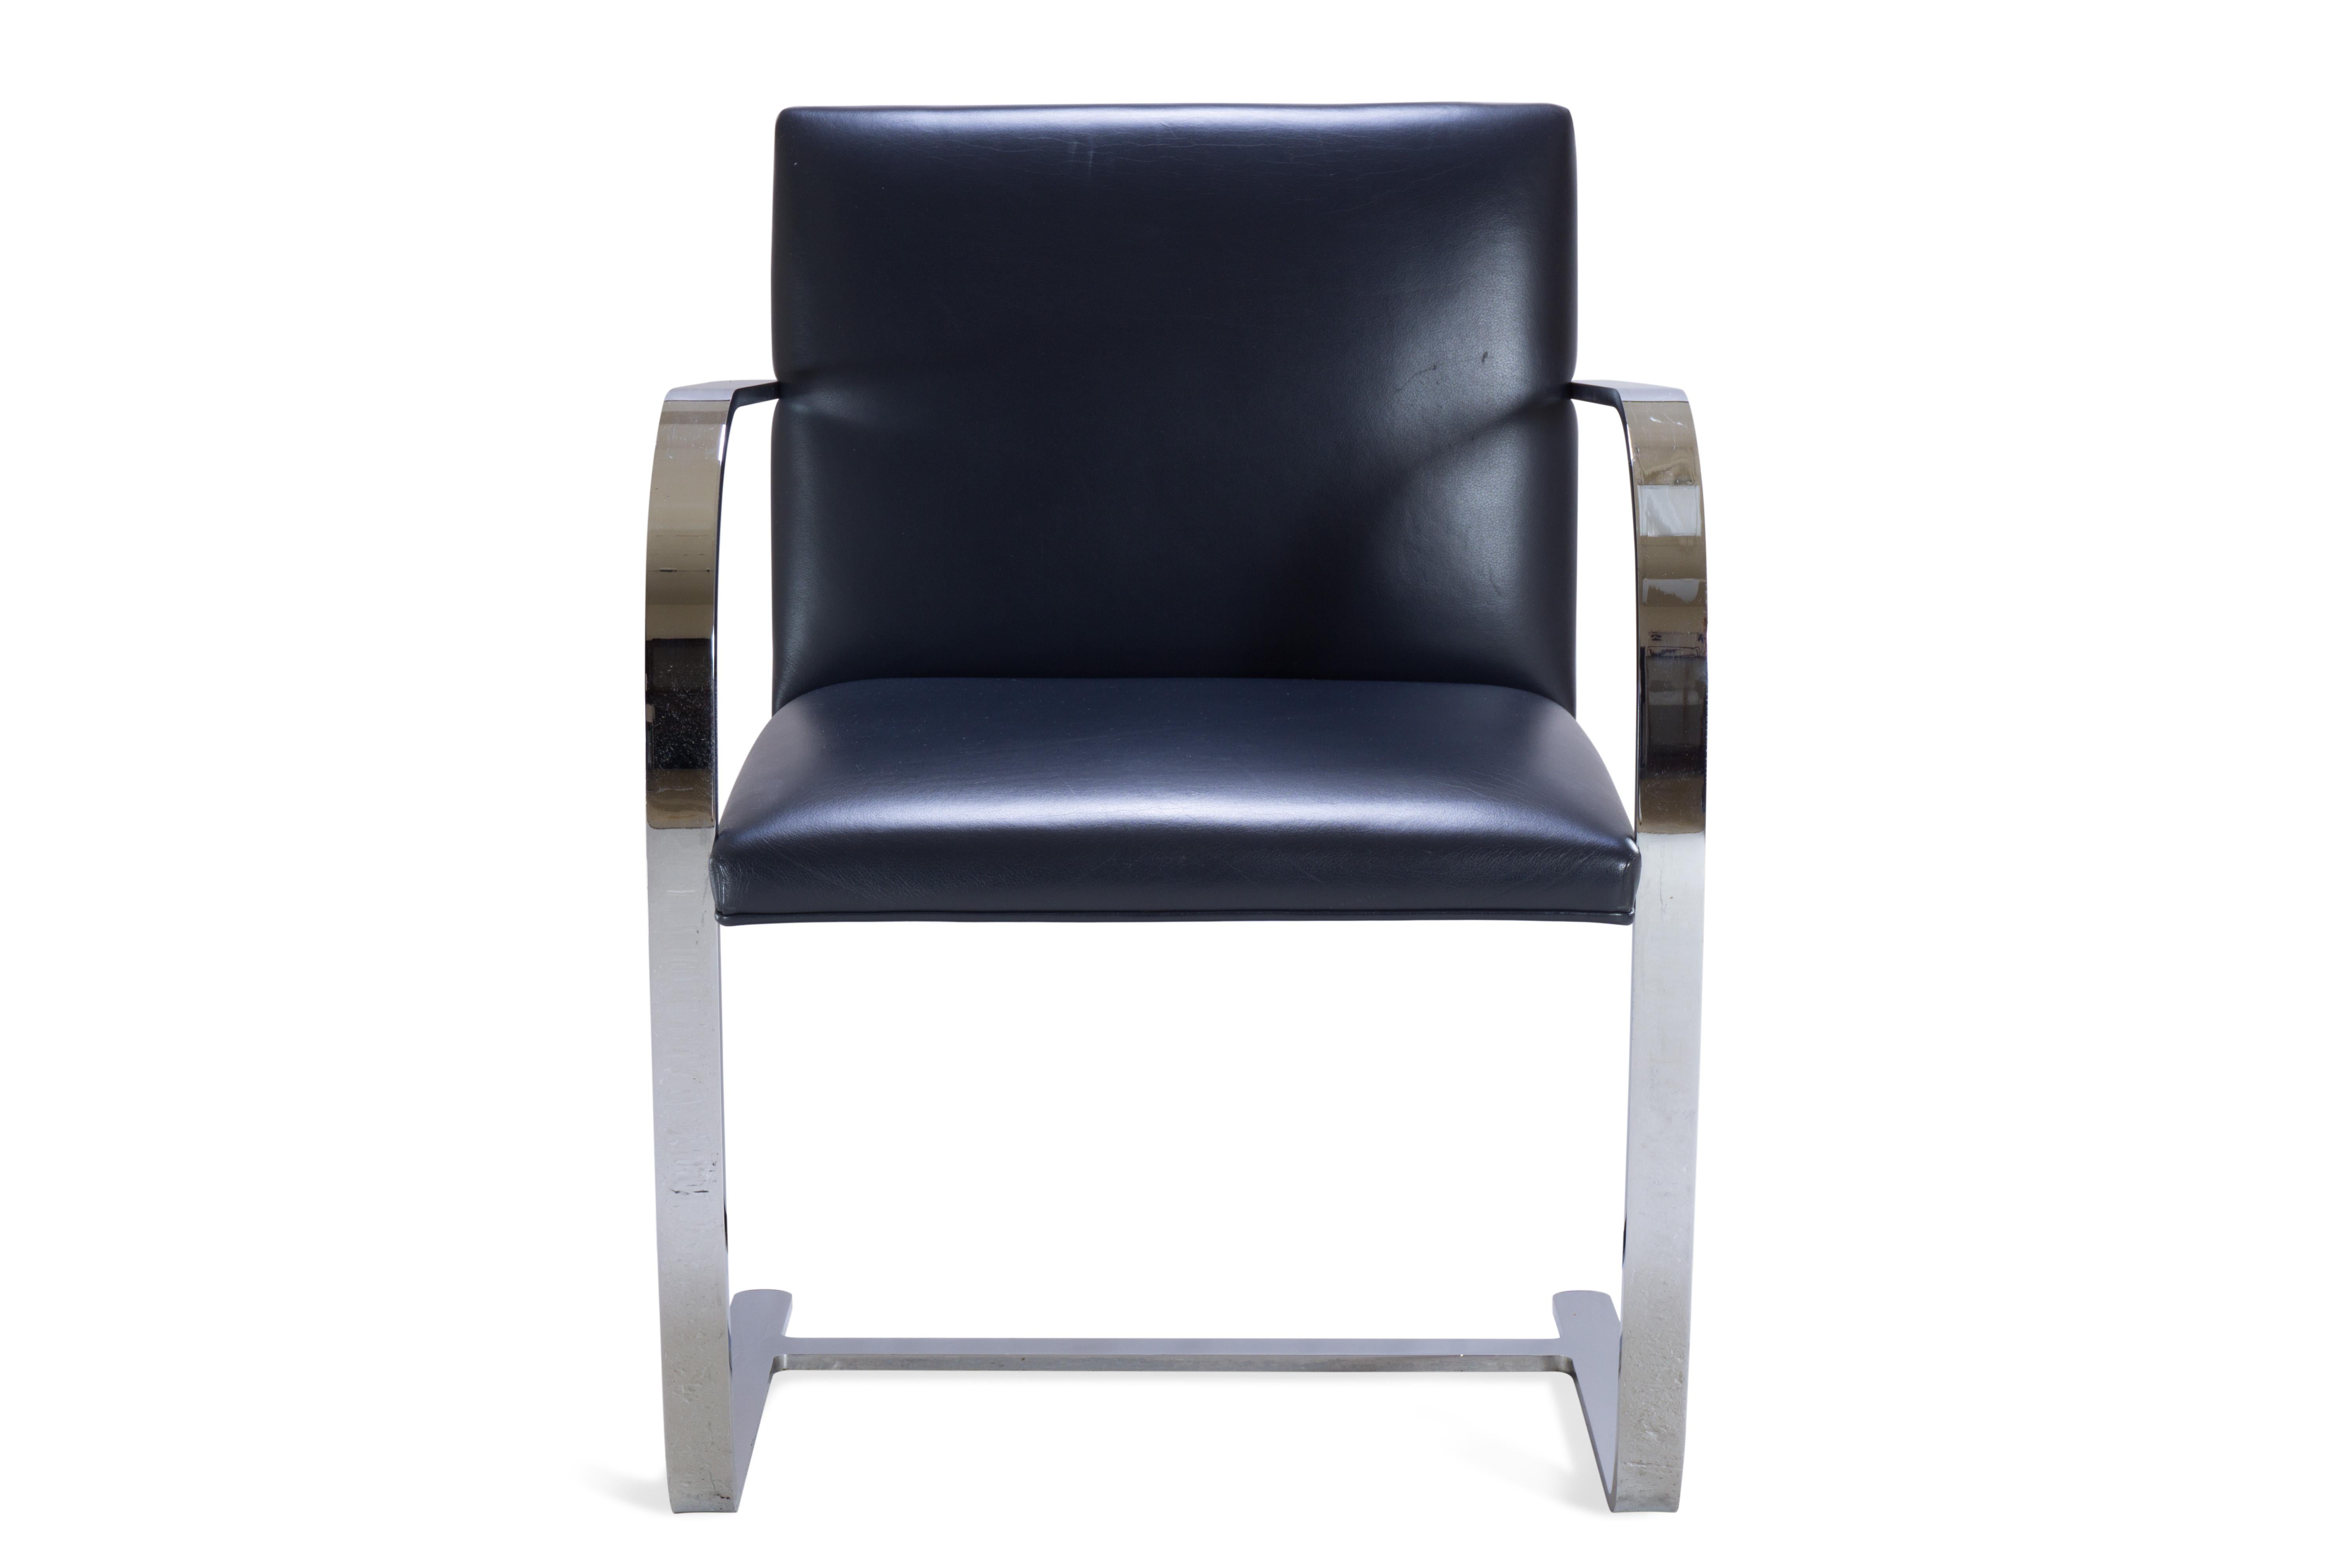 La définition du minimalisme dans un design singulier, réalisé par le grand Ludwig Mies van der Rohe en 1929, la chaise à barre plate de Brno est exactement cela. Il s'agit d'une édition contemporaine des chaises Mies van der Rohe pour Knoll,